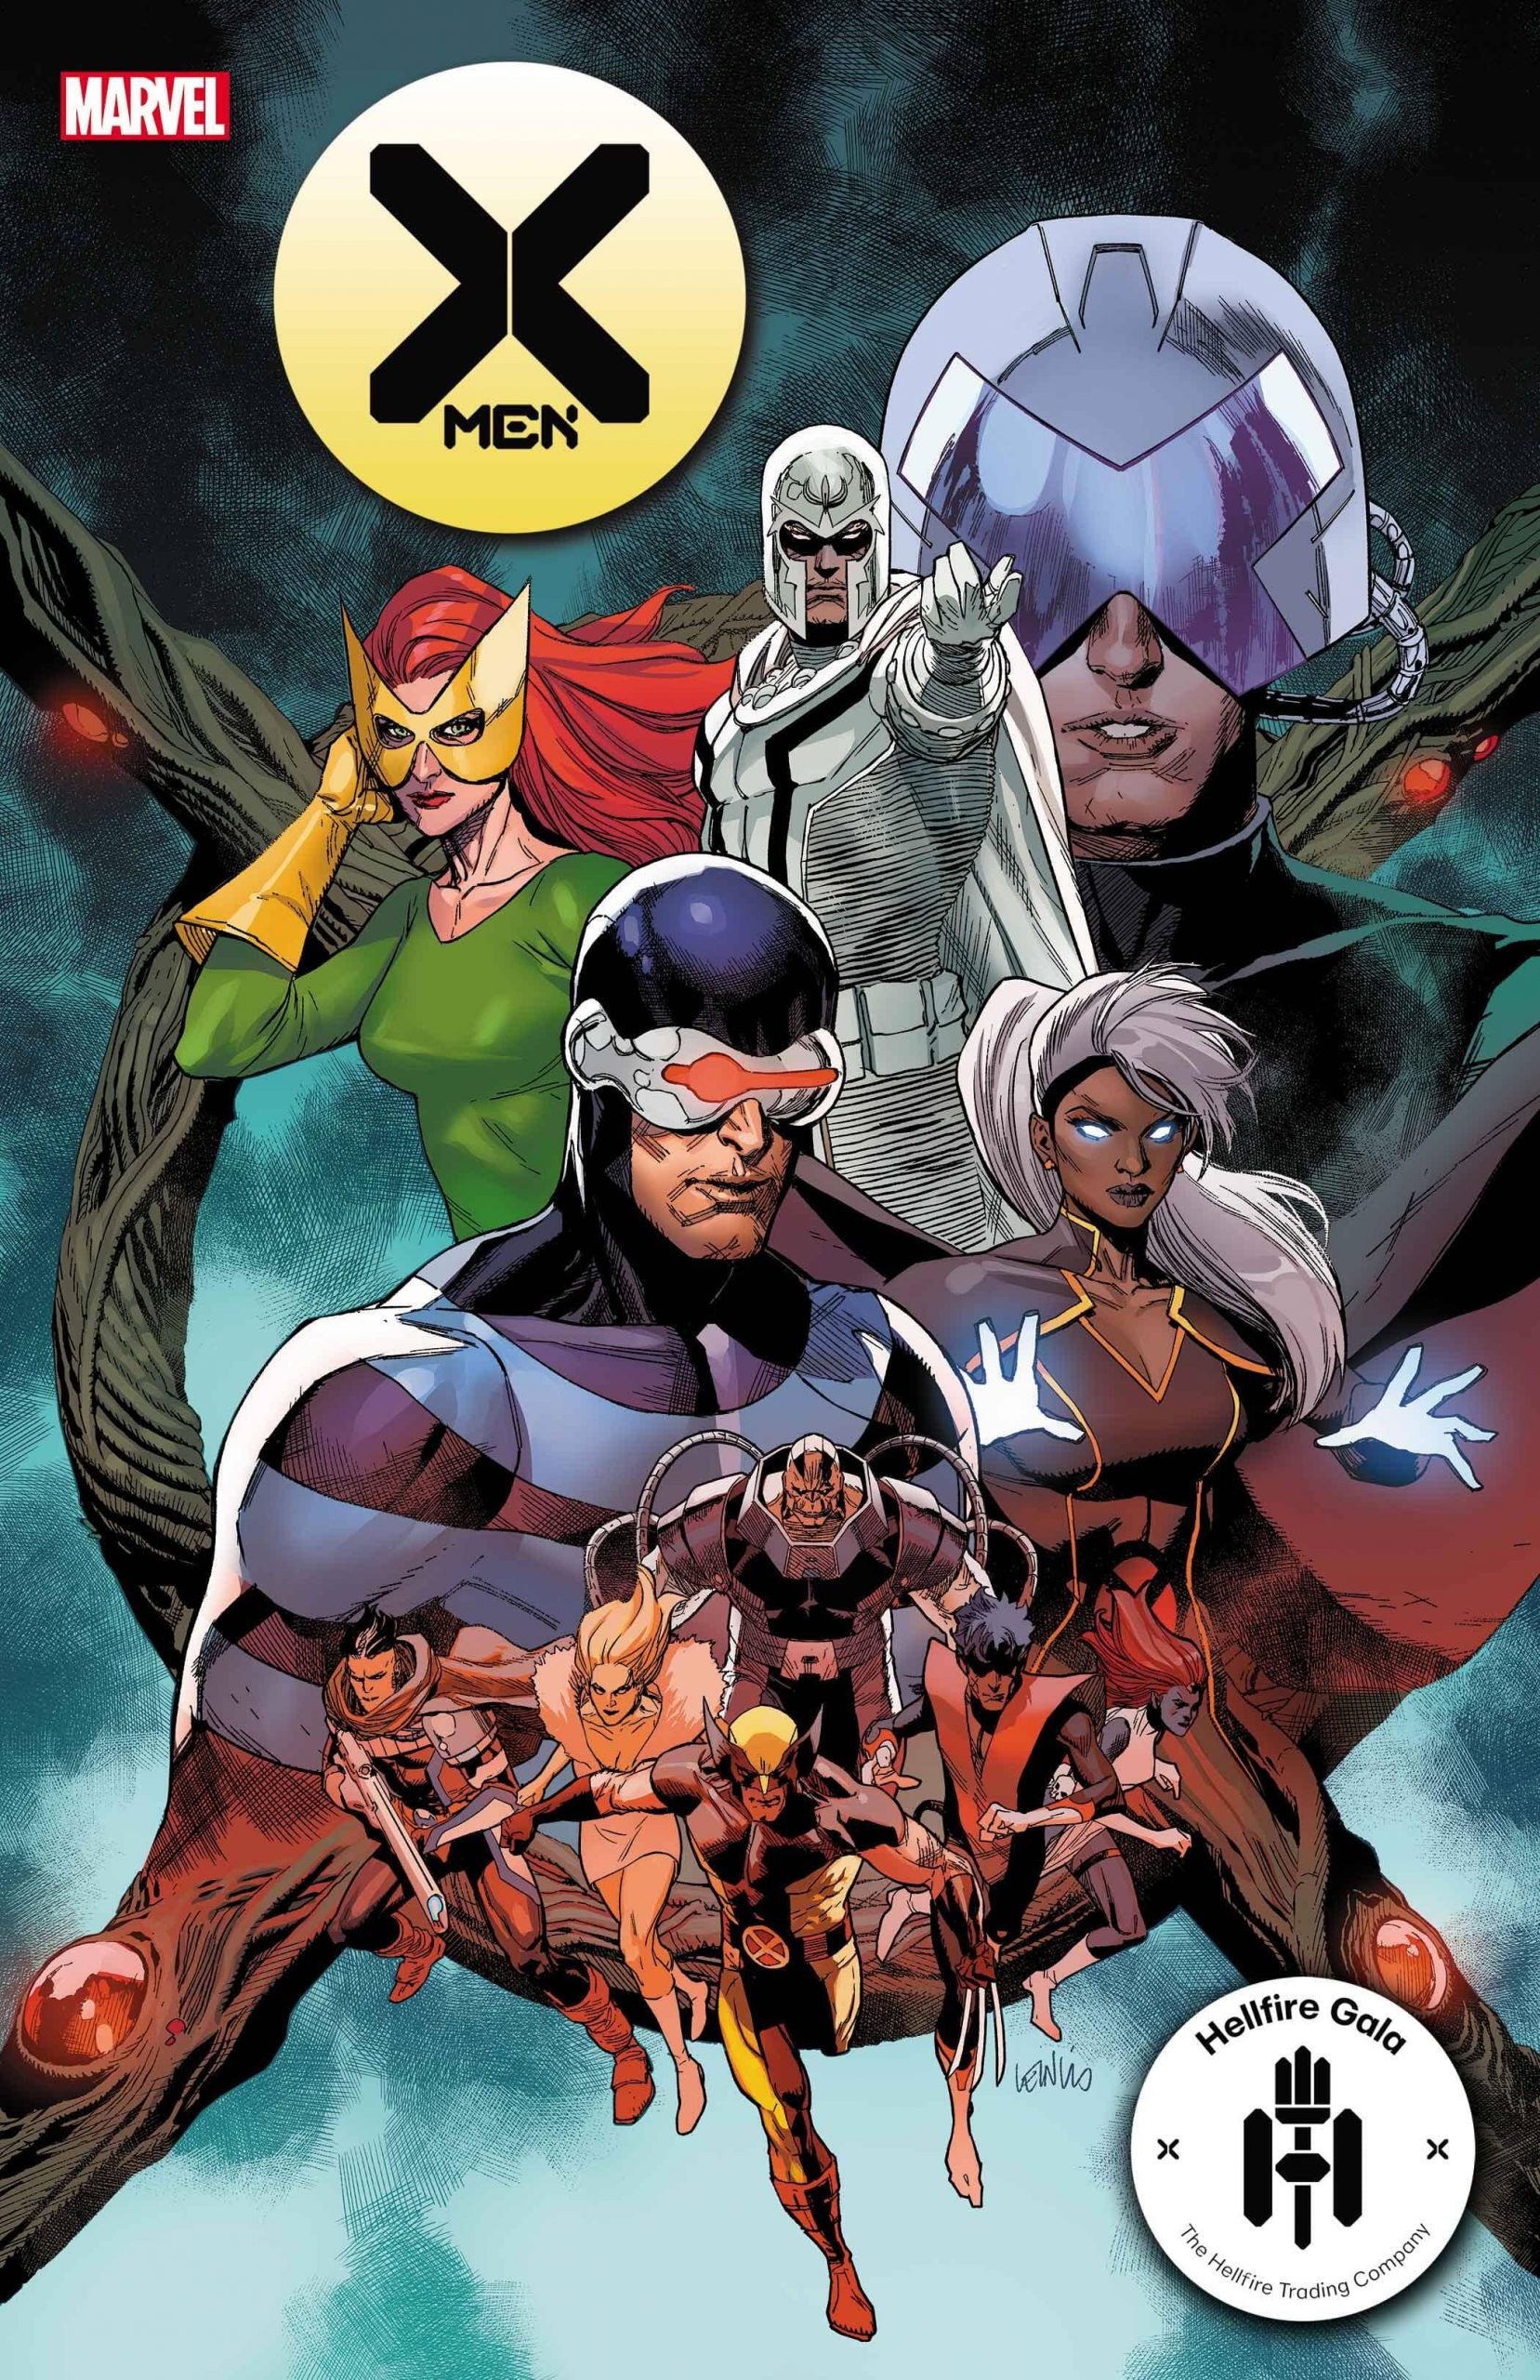 X-Men #21 - Hellfire Gala - A noite de Gala do Clube do Inferno em X-Men - Blog Farofeiros